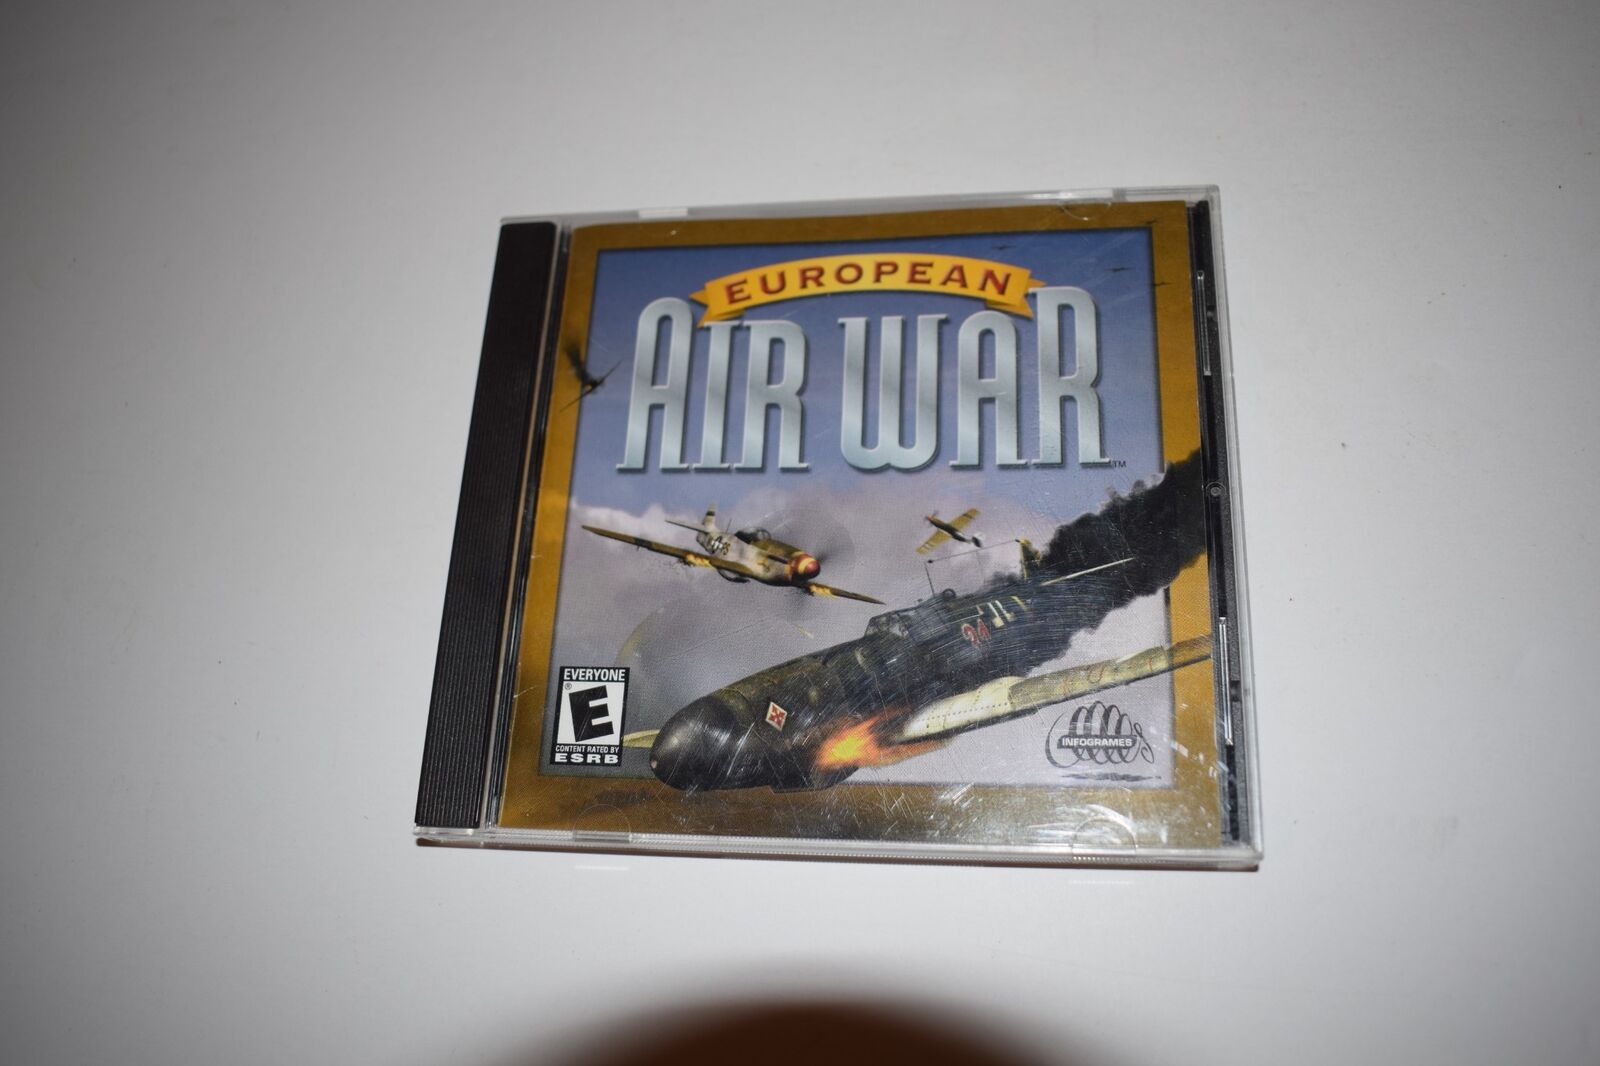 EUROPEAN AIR WAR - 2001 INFOGRAMES PC CD-ROM WWII FLIGHT VIDEO GAME (MVY42)